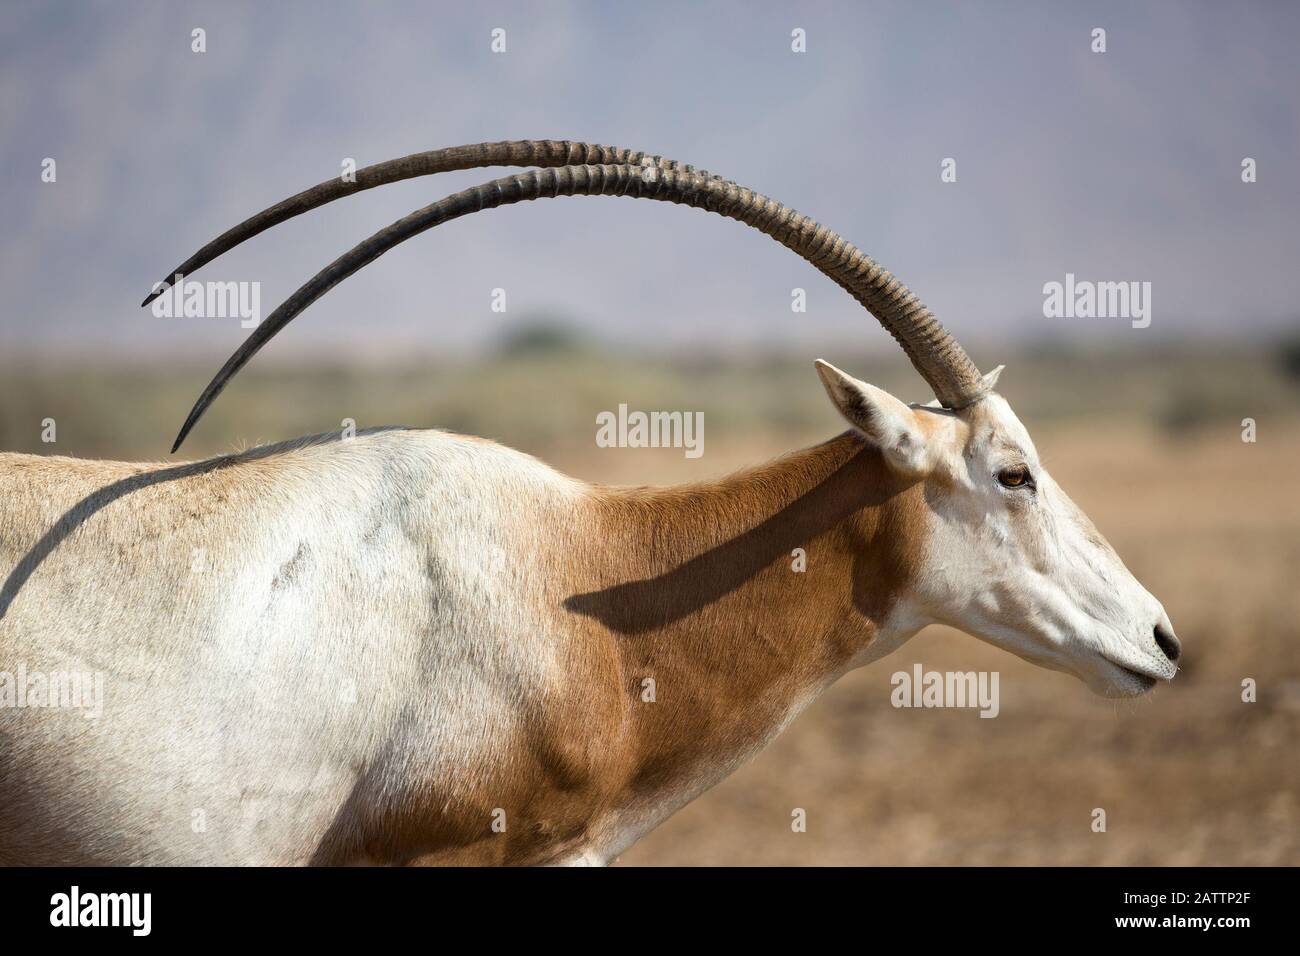 Der Scimitar-gehörnte Oryx, eine in freier Wildbahn ausgestorbene gefährdete Art, befindet sich in einem Brutzentrum in der Negev-Wüste. Oryx verdammt. Stockfoto